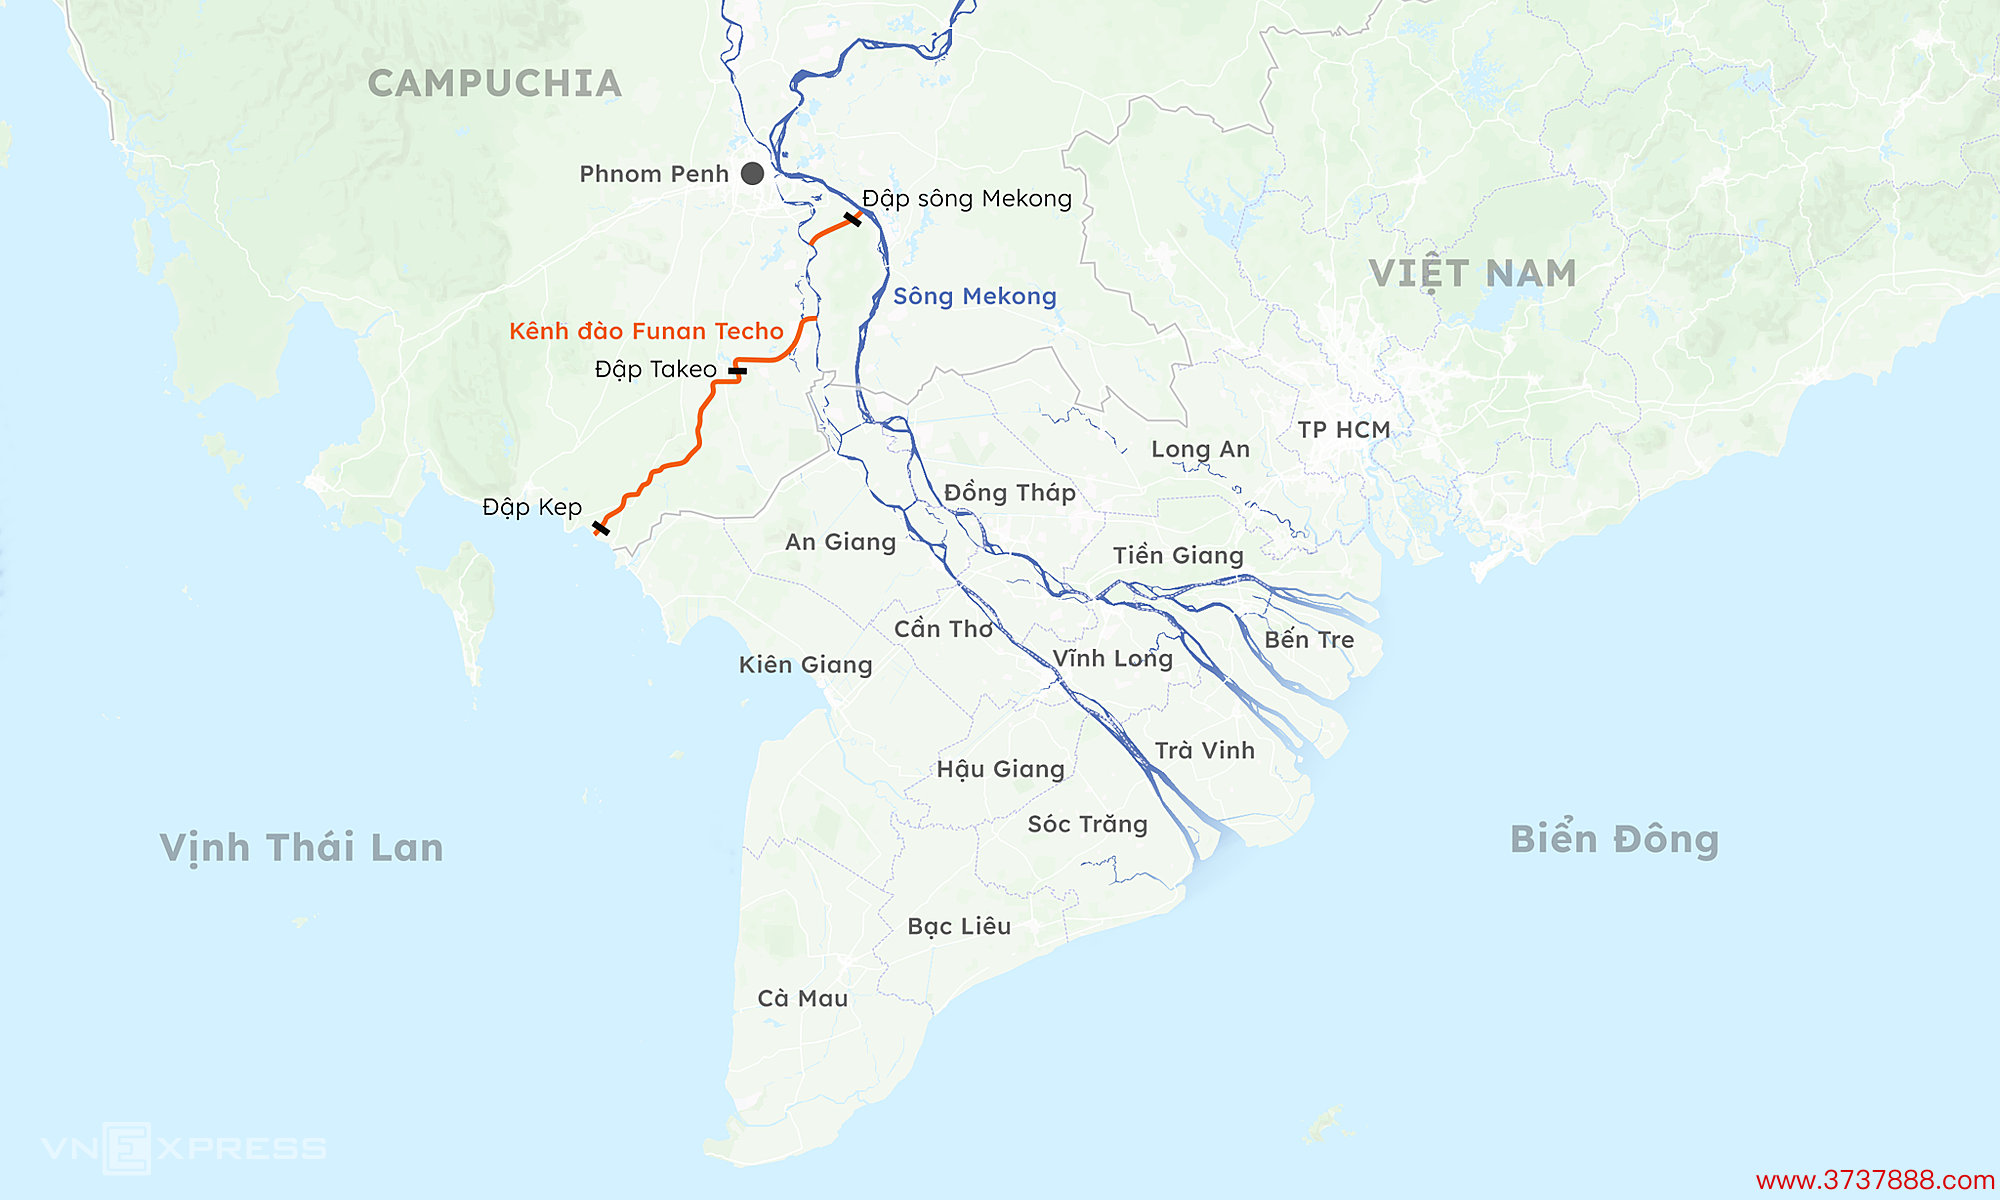 Hướng tuyến kênh đào Funan Techo. Đồ họa: Khánh Hoàng